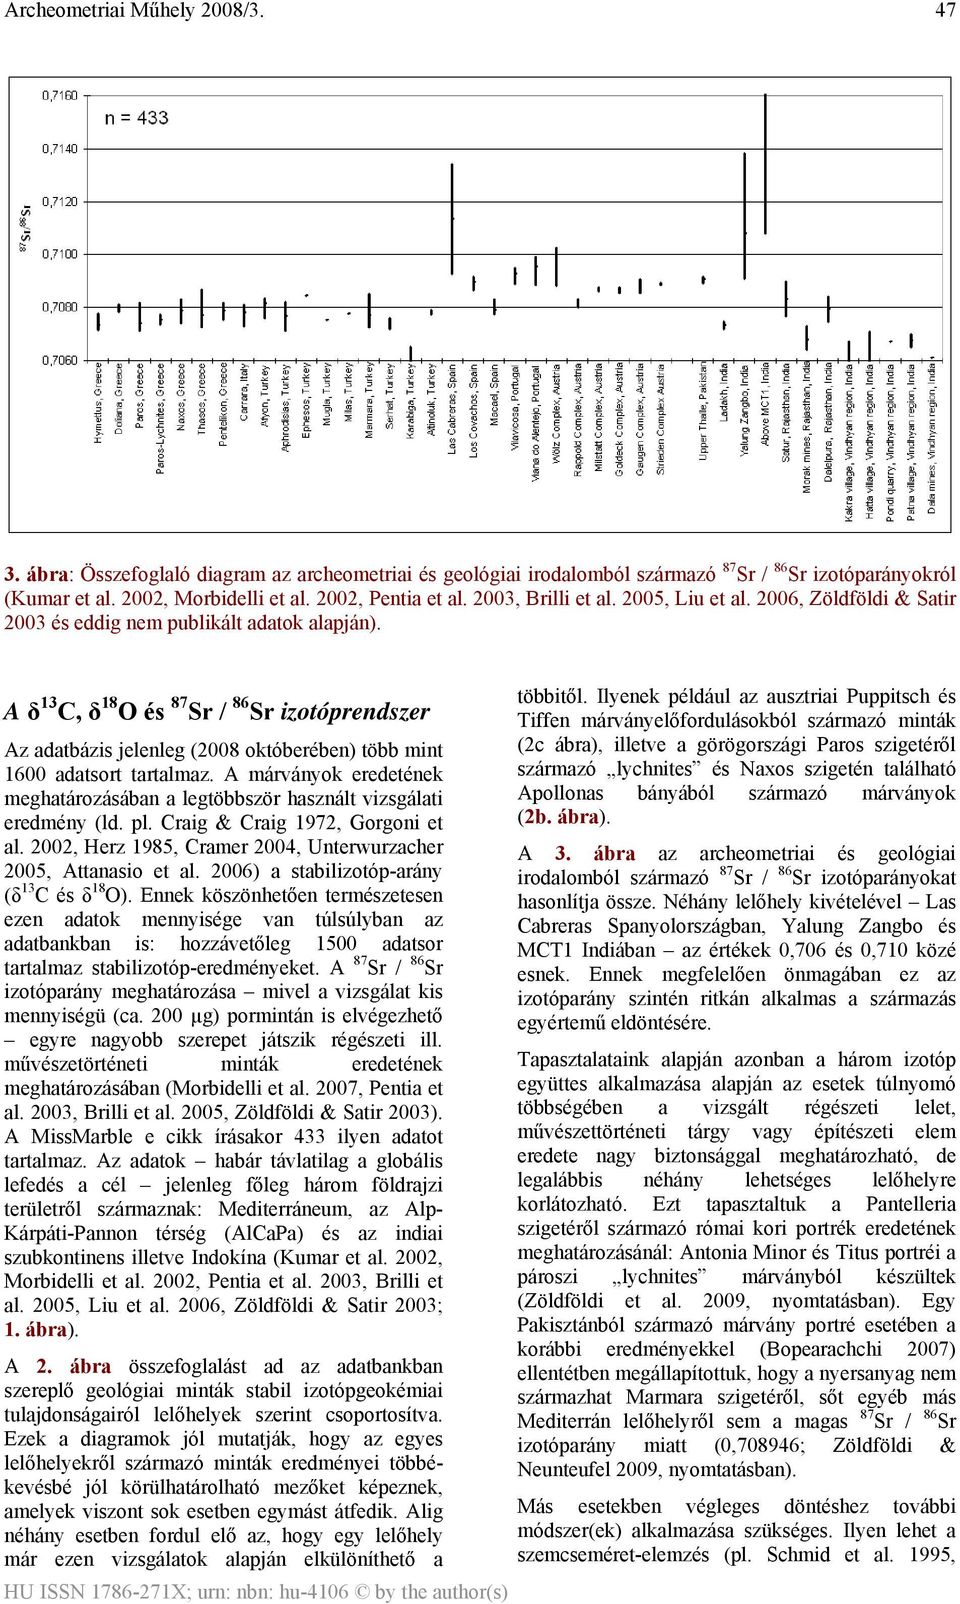 A δ 13 C, δ 18 O és 87 Sr / 86 Sr izotóprendszer Az adatbázis jelenleg (2008 októberében) több mint 1600 adatsort tartalmaz.